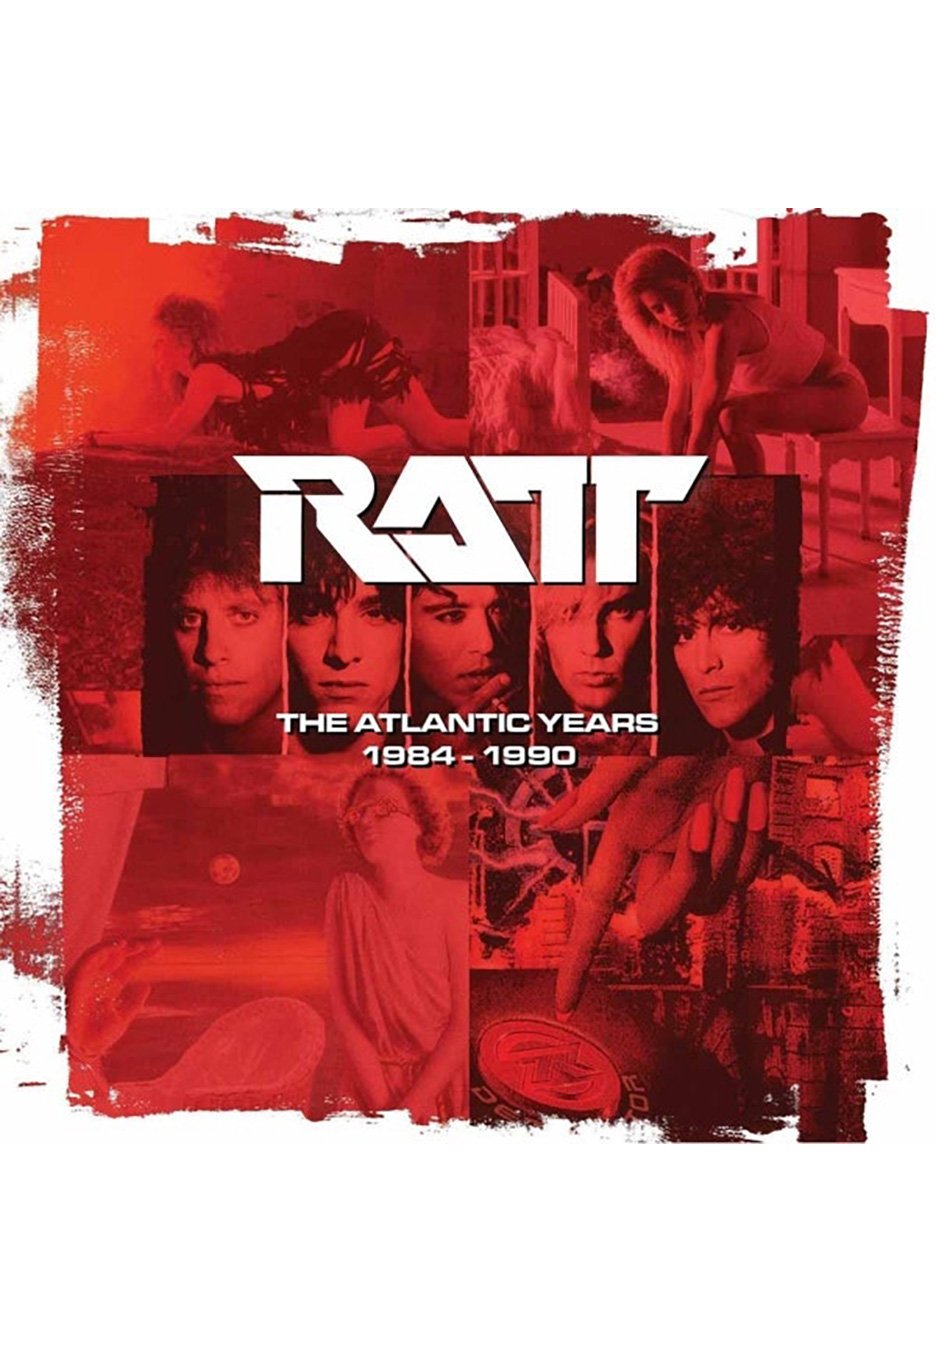 Ratt - The Atlantic Years - Vinyl Boxset